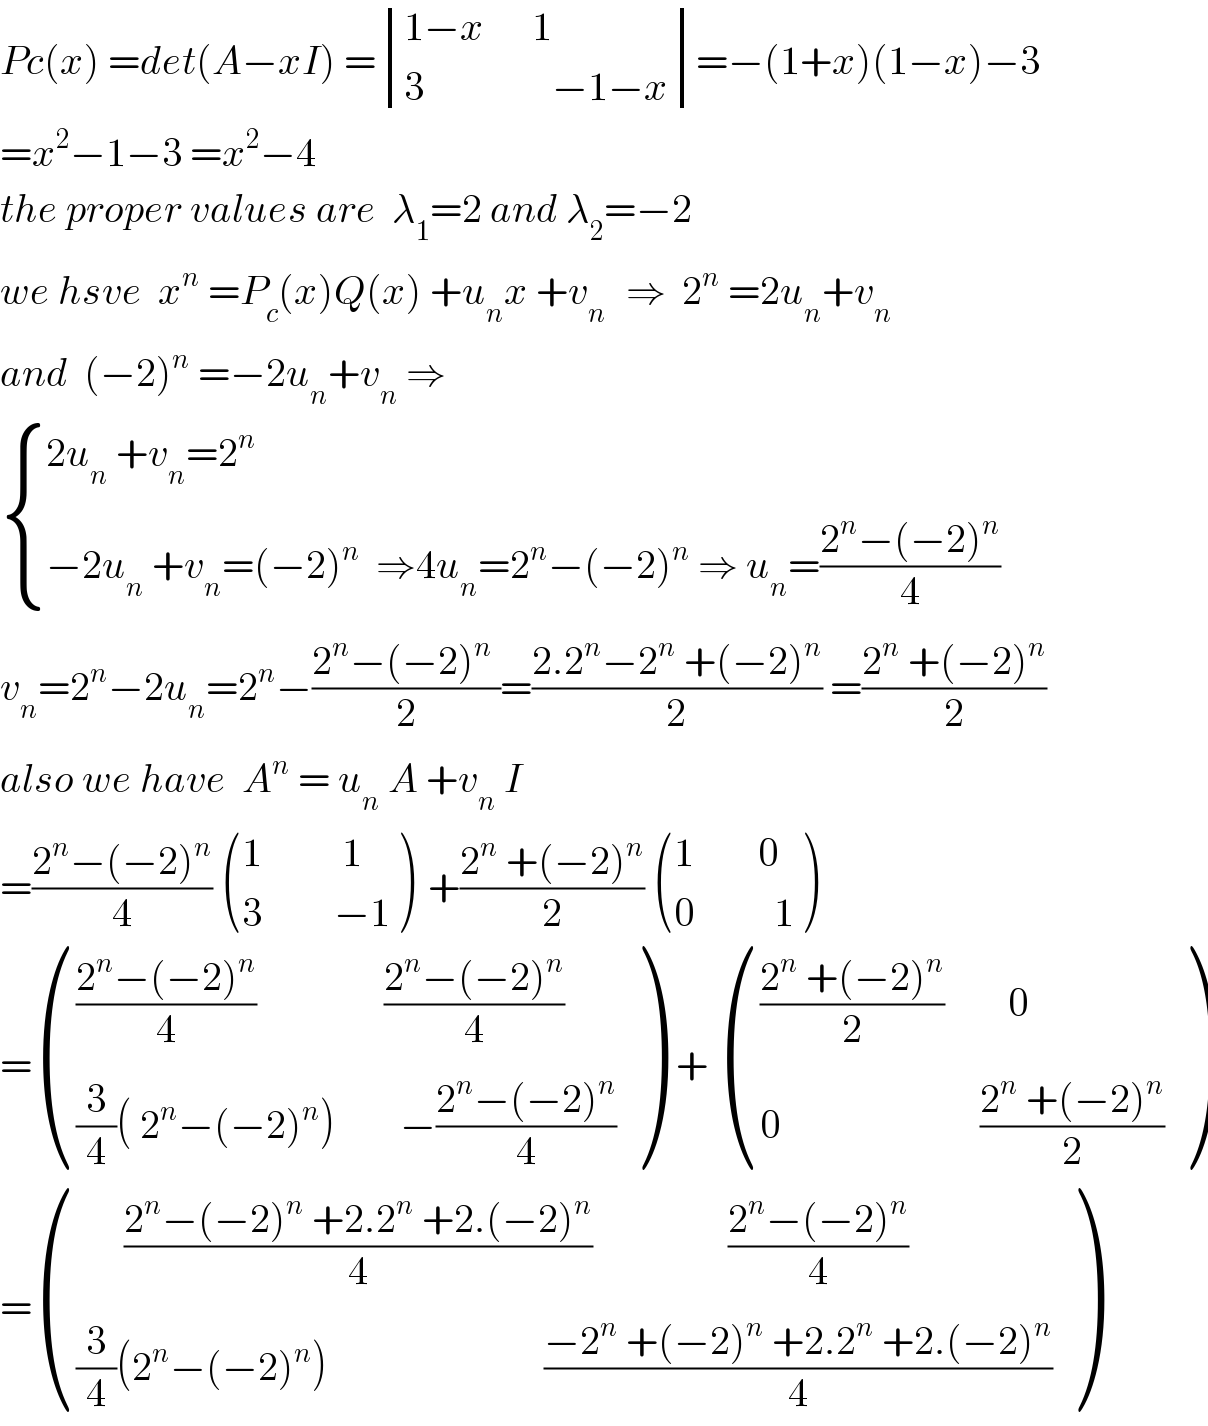 Pc(x) =det(A−xI) = determinant (((1−x      1)),((3                −1−x)))=−(1+x)(1−x)−3  =x^2 −1−3 =x^2 −4  the proper values are  λ_1 =2 and λ_2 =−2  we hsve  x^n  =P_c (x)Q(x) +u_n x +v_(n )   ⇒  2^n  =2u_n +v_n   and  (−2)^n  =−2u_n +v_n  ⇒   { ((2u_n  +v_n =2^n )),((−2u_n  +v_n =(−2)^n   ⇒4u_n =2^n −(−2)^n  ⇒ u_n =((2^n −(−2)^n )/4))) :}  v_n =2^n −2u_n =2^n −((2^n −(−2)^n  )/2)=((2.2^n −2^n  +(−2)^n )/2) =((2^n  +(−2)^n )/2)  also we have  A^n  = u_n  A +v_n  I   =((2^n −(−2)^n )/4)  (((1          1)),((3         −1)) )  +((2^n  +(−2)^n )/2)  (((1        0)),((0          1)) )  = (((((2^n −(−2)^n )/4)                ((2^n −(−2)^n )/4))),(((3/4)( 2^n −(−2)^n )        −((2^n −(−2)^n )/4))) )  +  (((((2^n  +(−2)^n )/2)        0)),((0                         ((2^n  +(−2)^n )/2))) )  = (((      ((2^n −(−2)^n  +2.2^n  +2.(−2)^n )/4)                 ((2^n −(−2)^n )/4))),(((3/4)(2^n −(−2)^n )                           ((−2^n  +(−2)^n  +2.2^n  +2.(−2)^n )/4))) )  